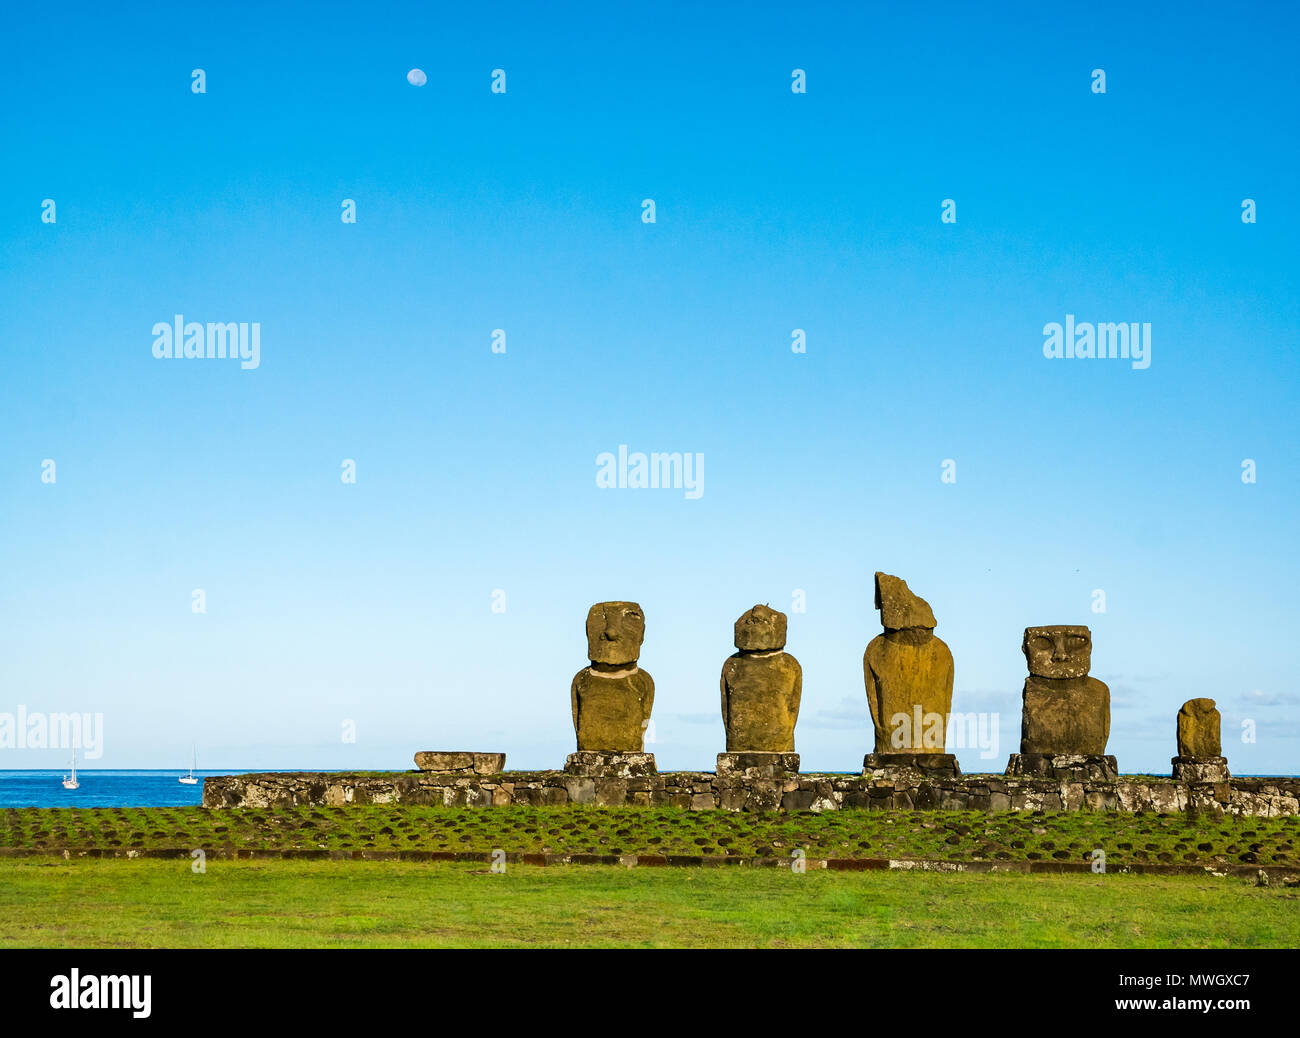 Ahu Vai Ura, Tahai Moai figure, Hanga Roa, Isola di Pasqua, Cile, con la luna nel cielo blu durante il giorno e yacht ancorati in Oceano Pacifico Foto Stock